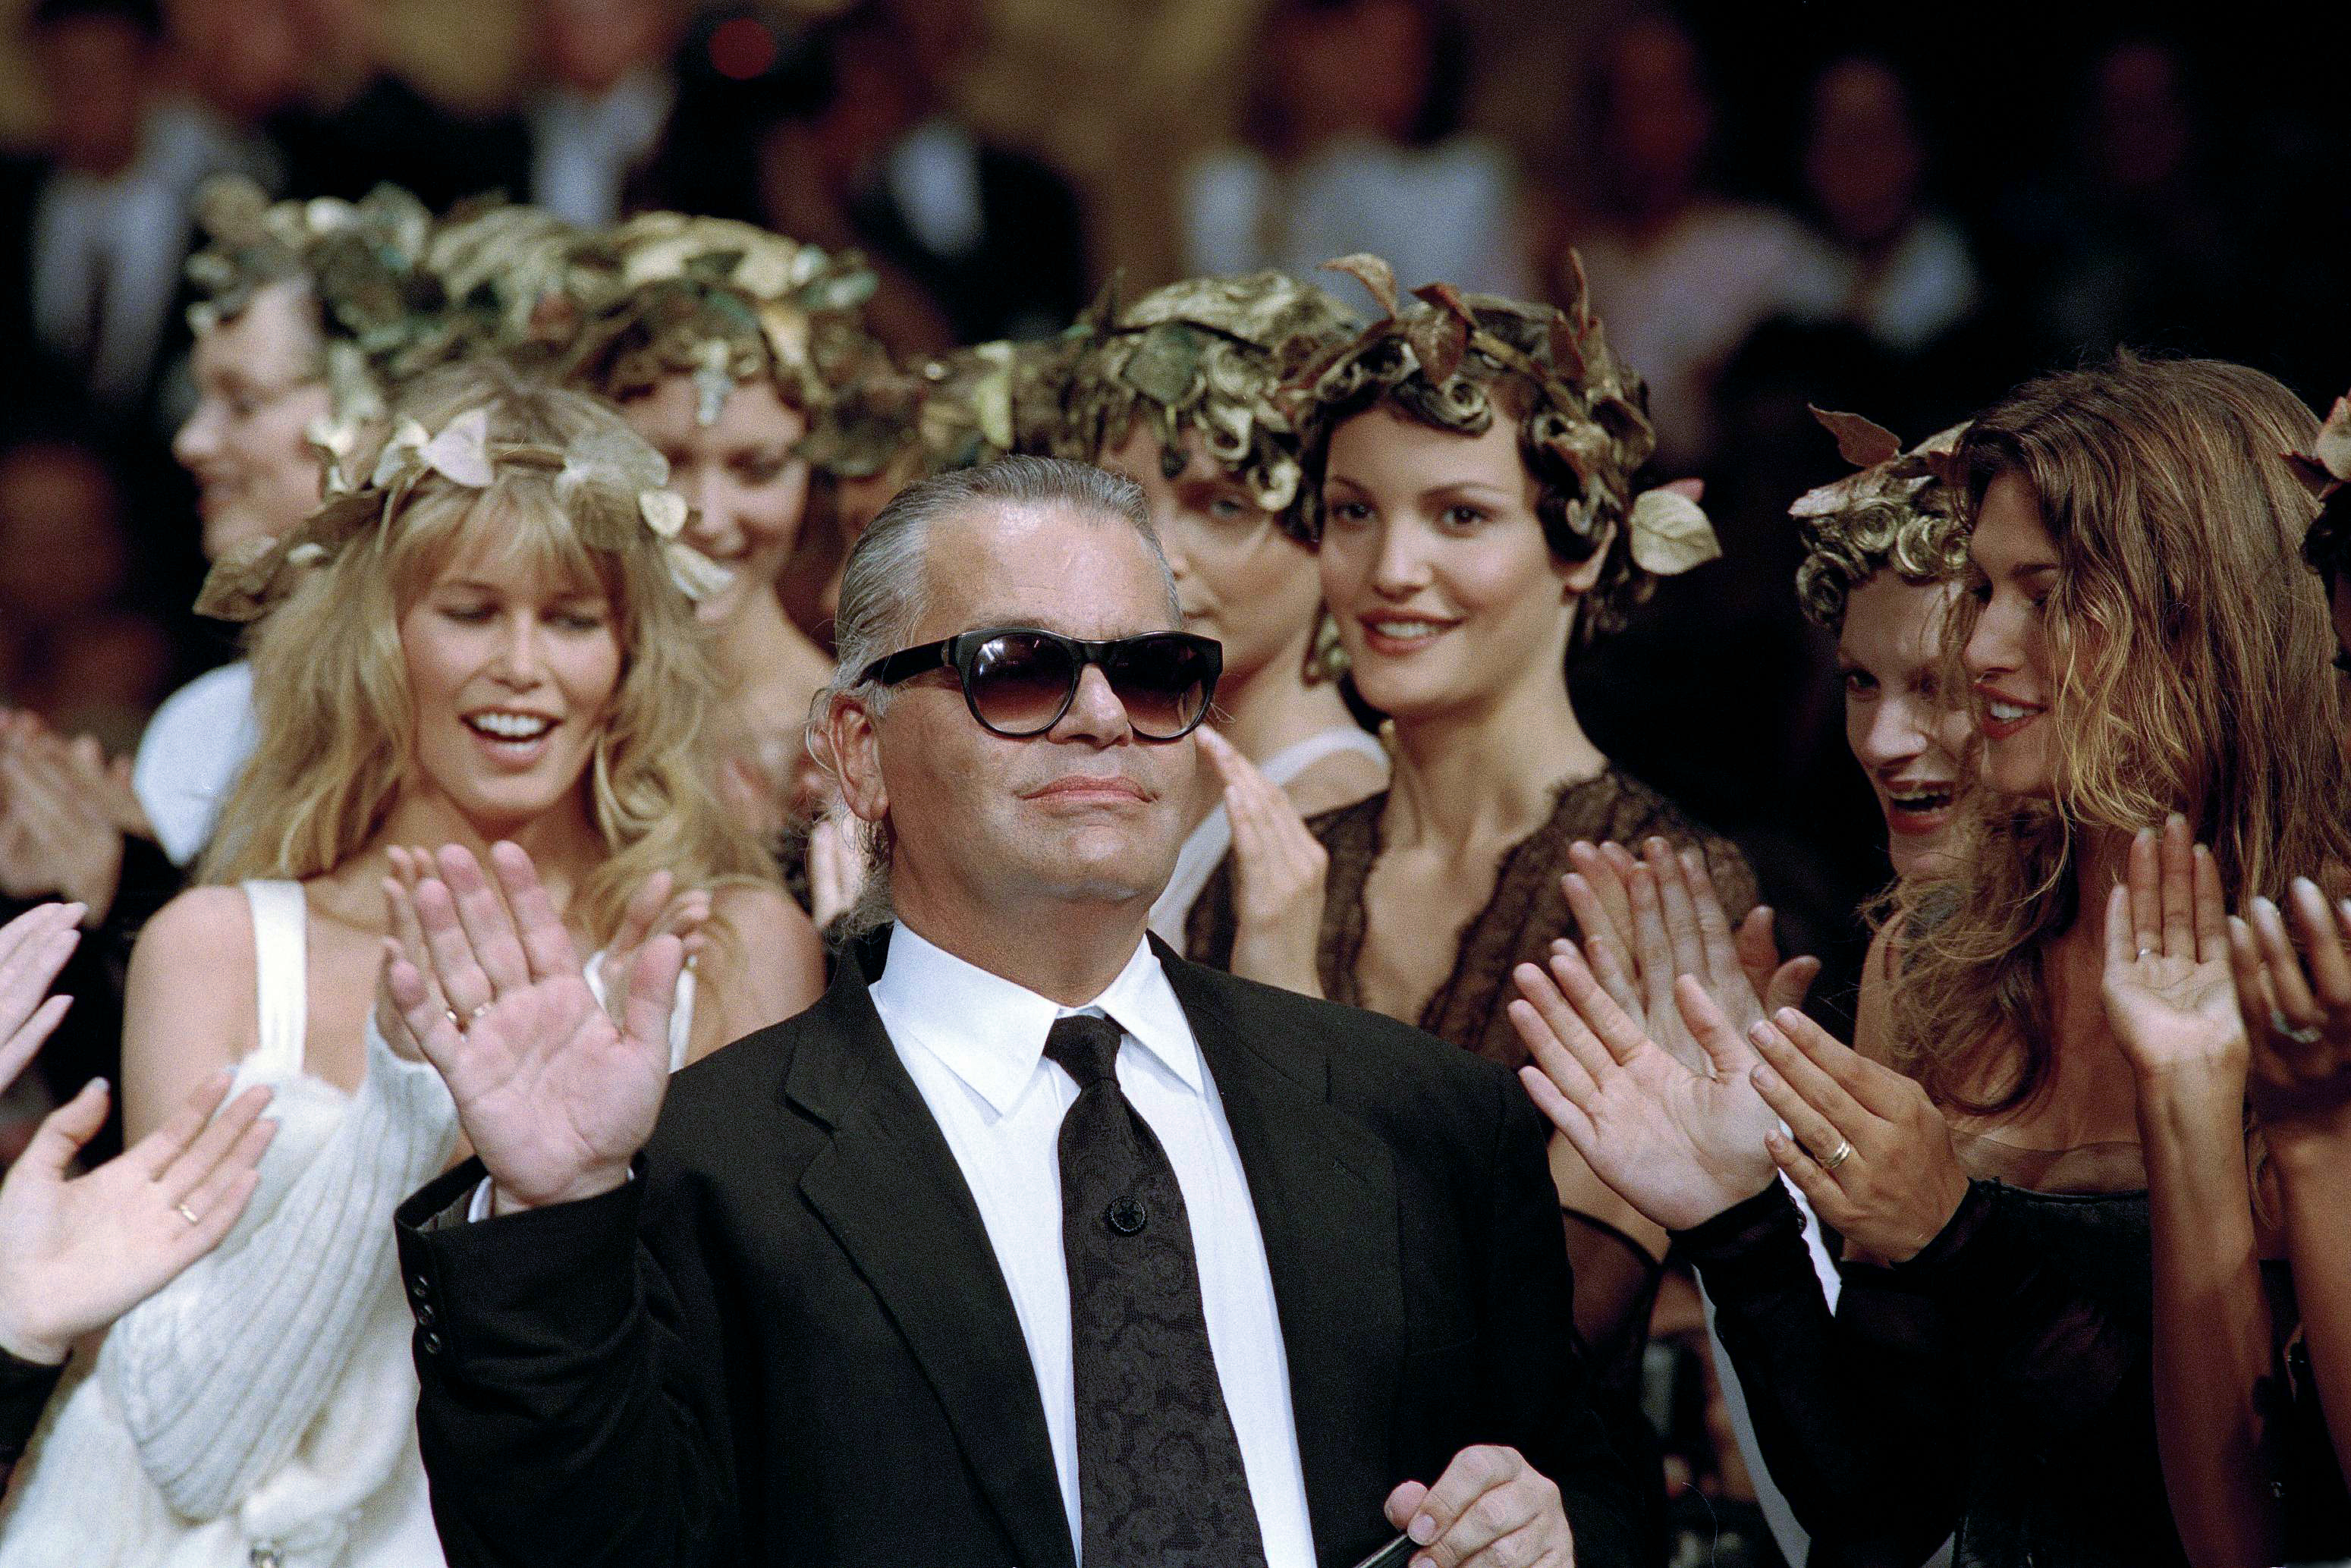 Homenaje a Karl Lagerfeld en la Met Gala quedó en medio de la polémica por el recuerdo de sus comentarios misóginos, homófobos y gordofóbicos